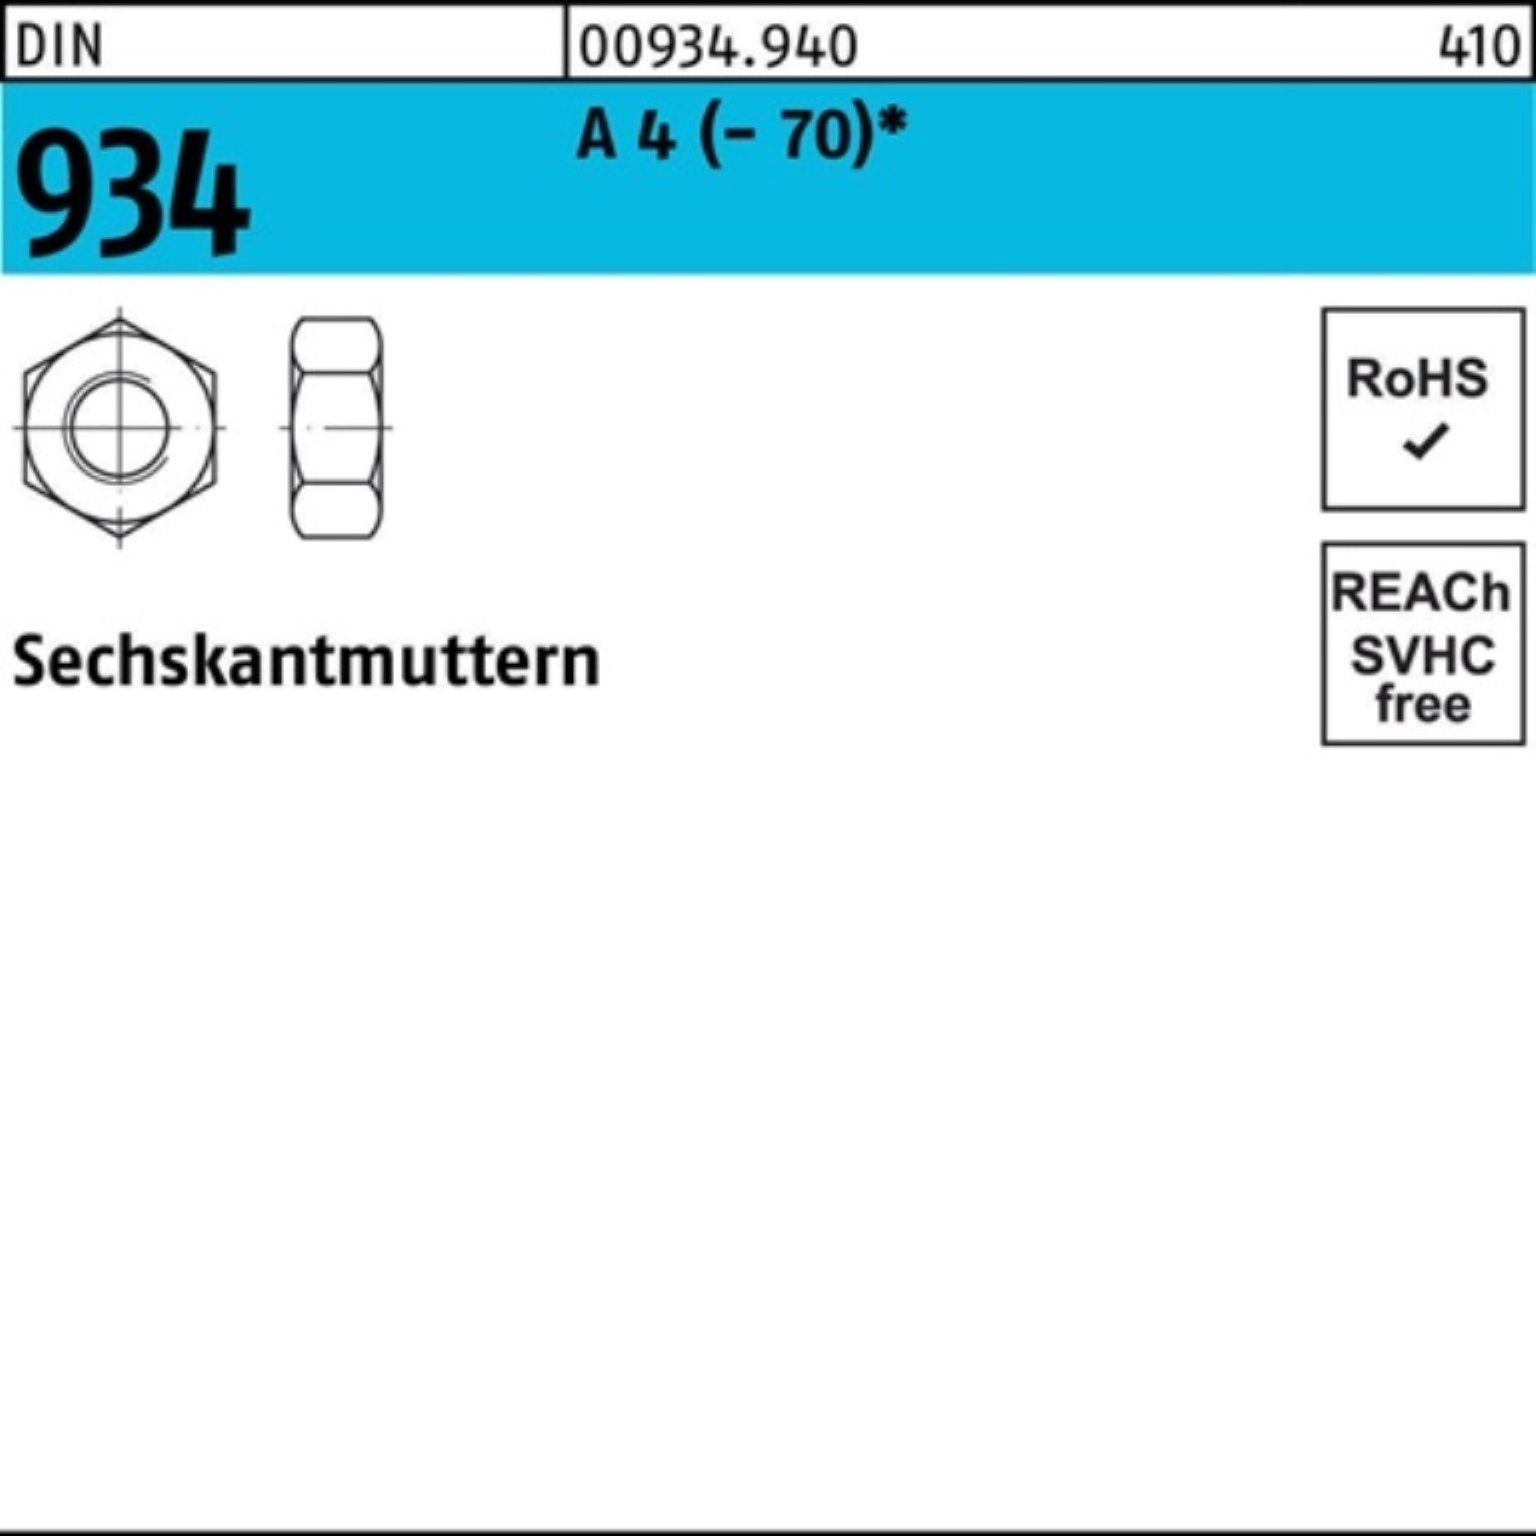 Reyher Muttern 100er (70) 934 DIN Stück Sechskantmutter 4 Pack 934 A 25 A M20 DIN